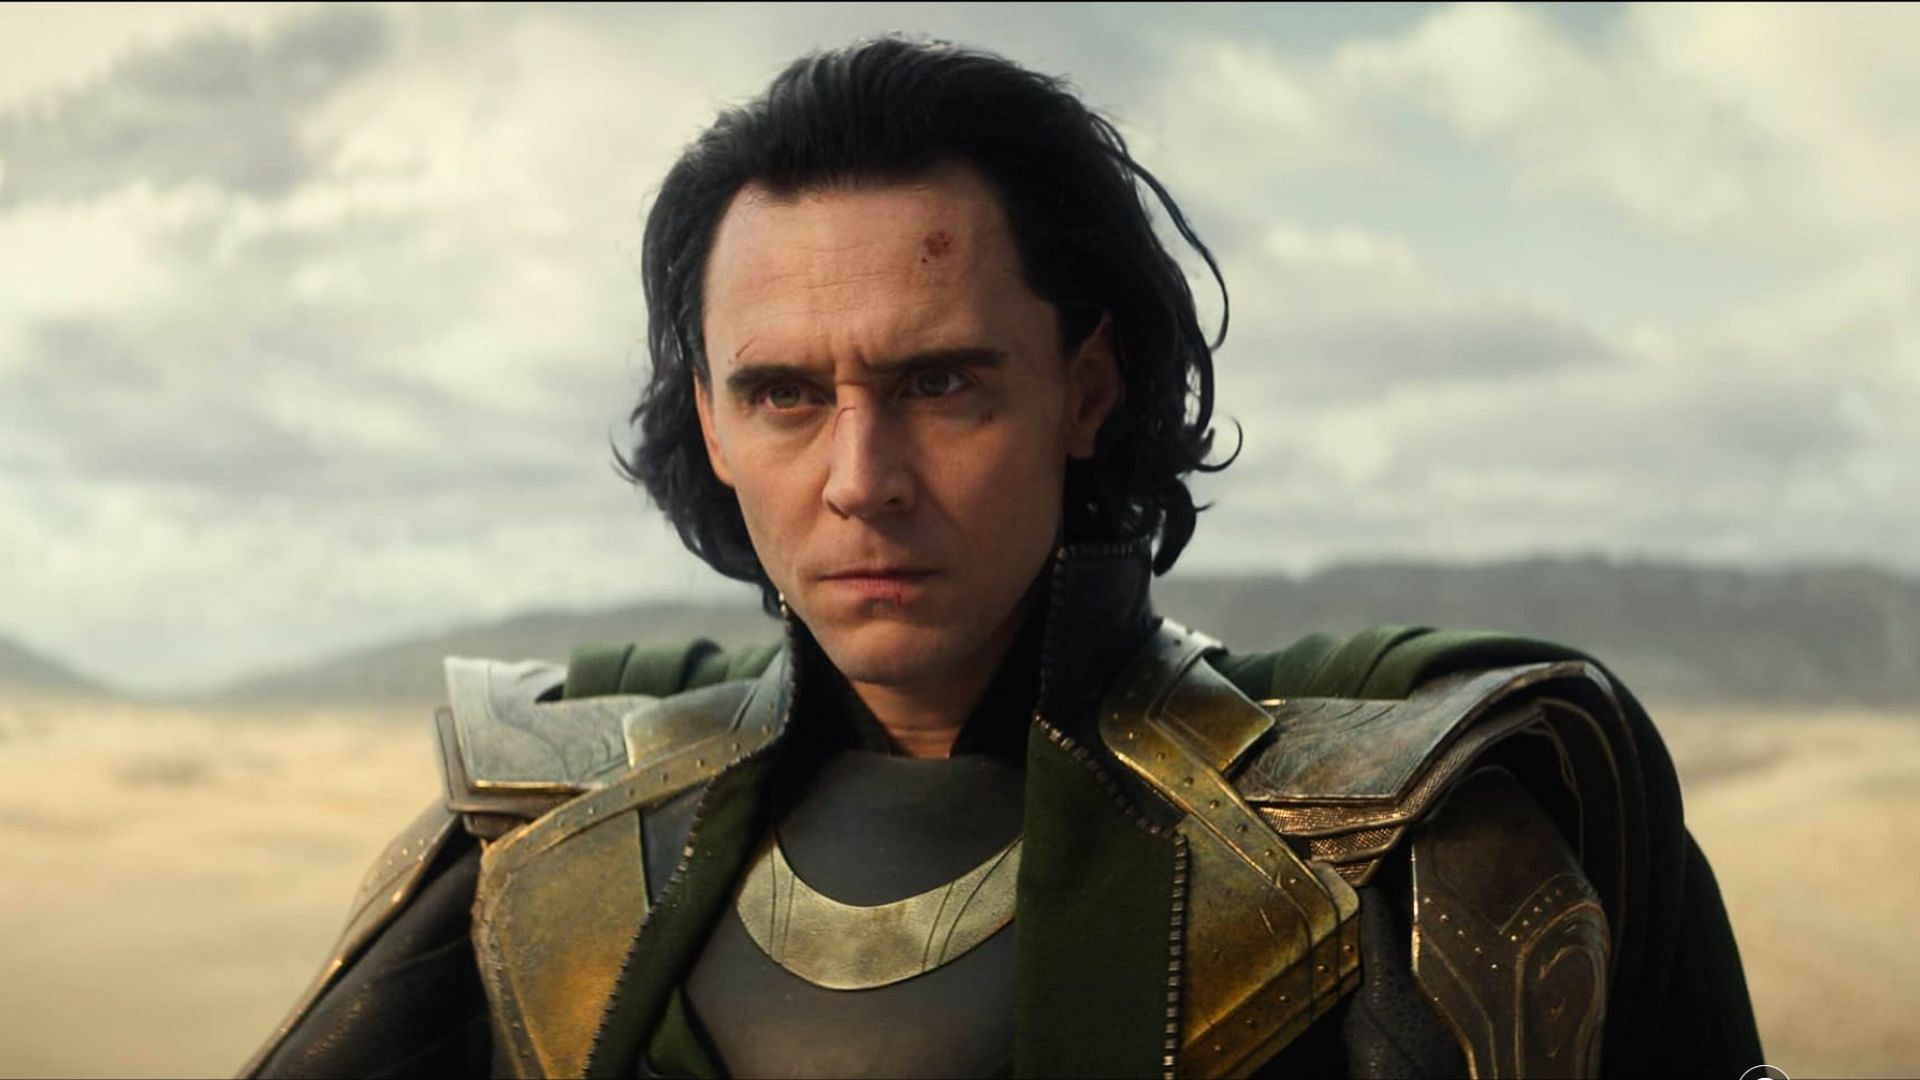 Loki : le récap de la saison 1